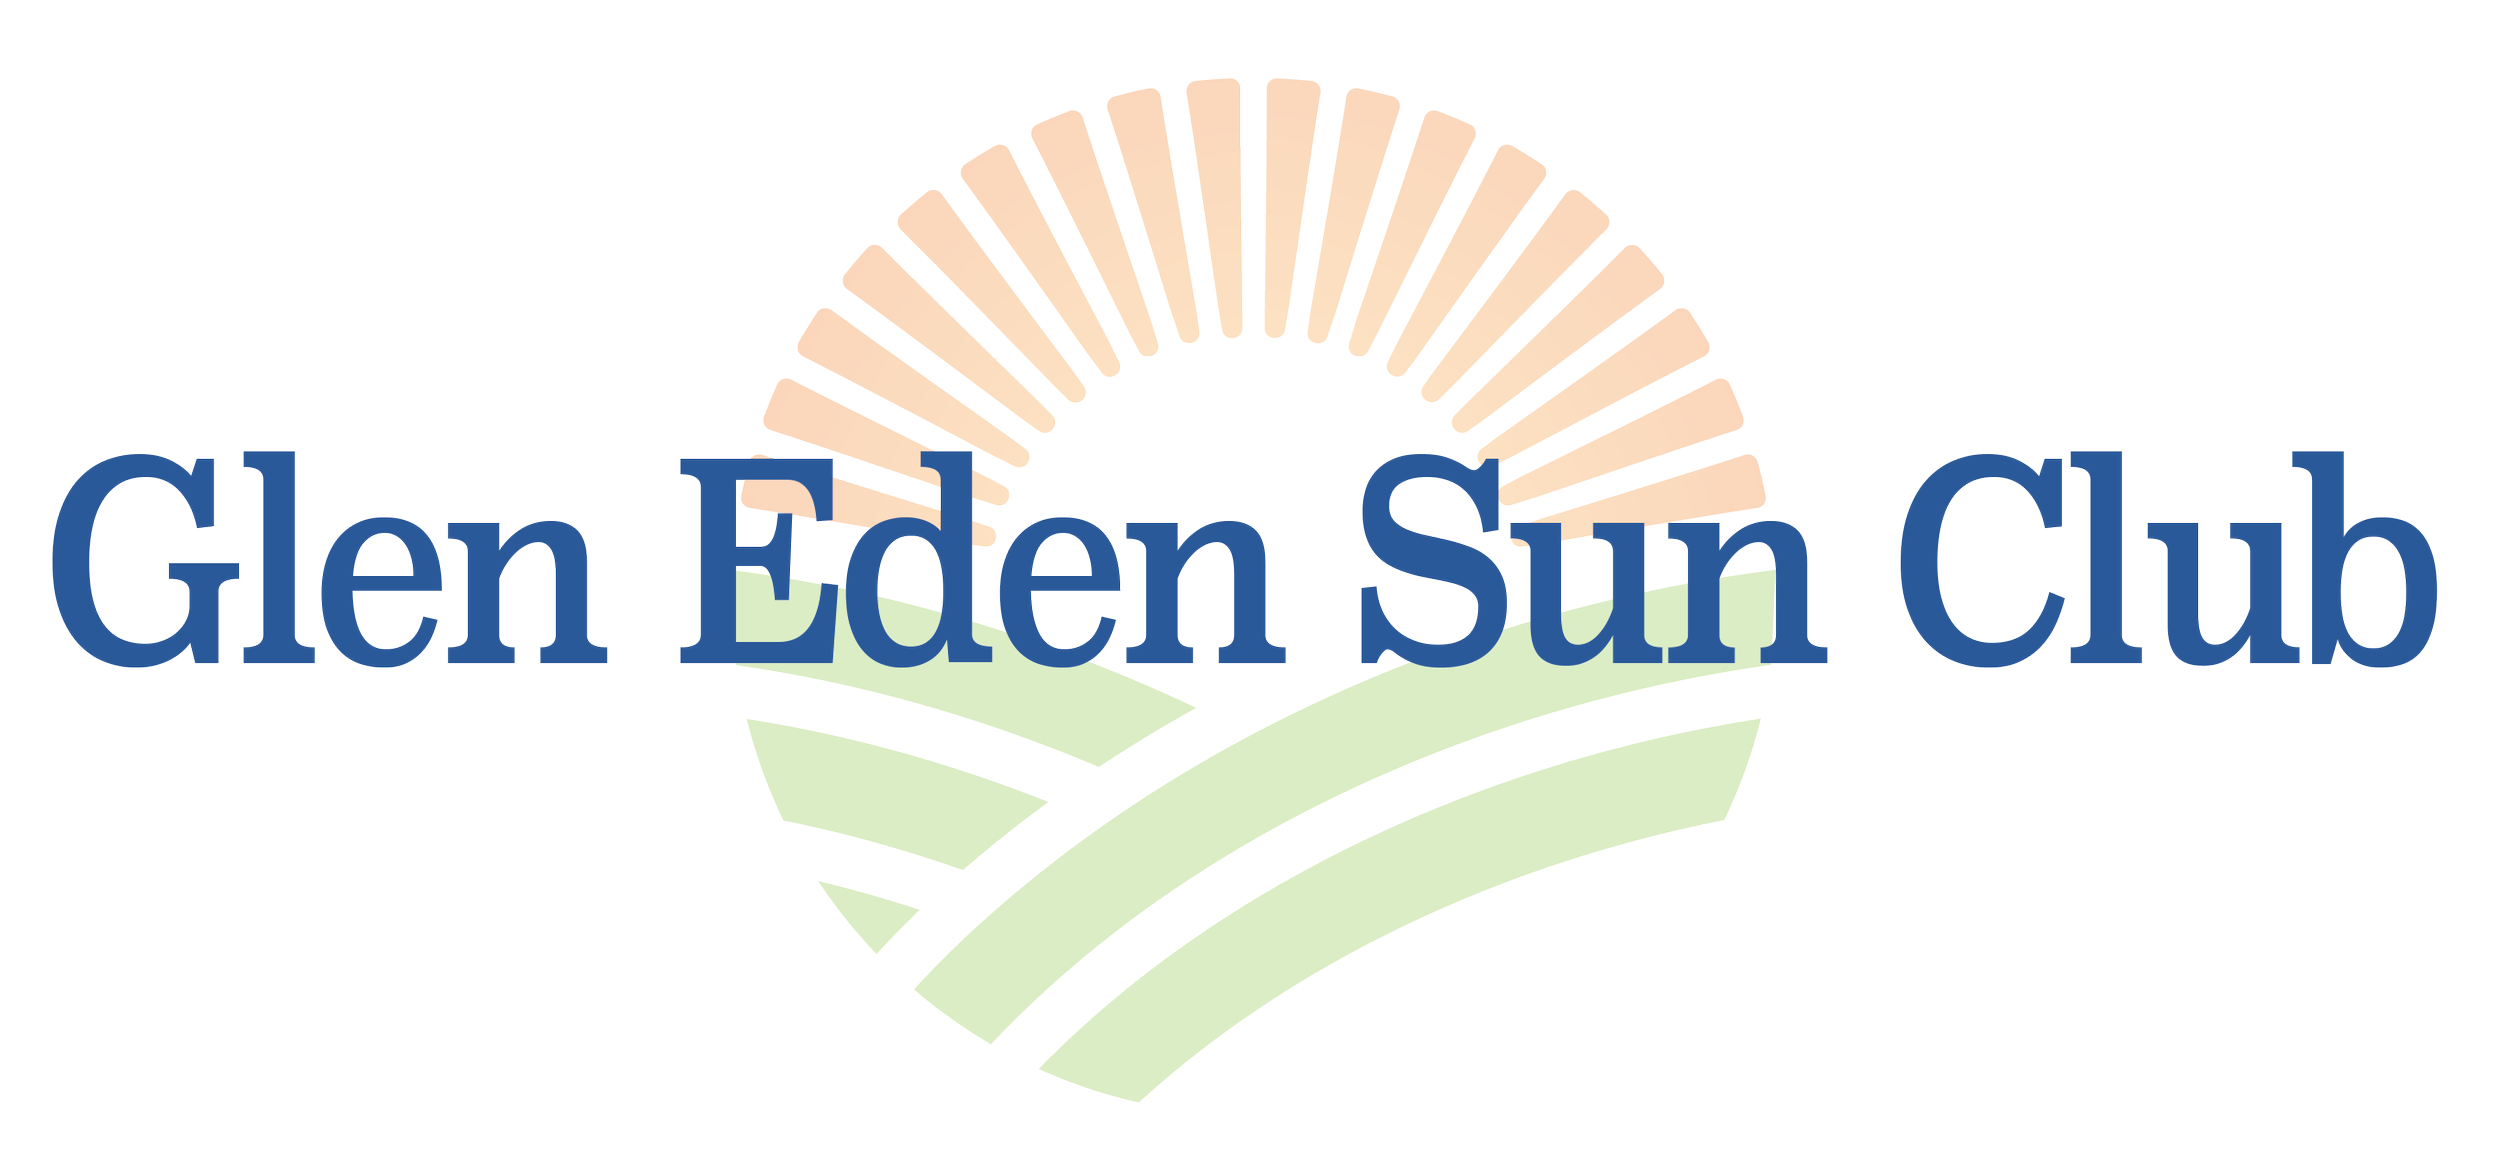 Glen Eden Sun Club image